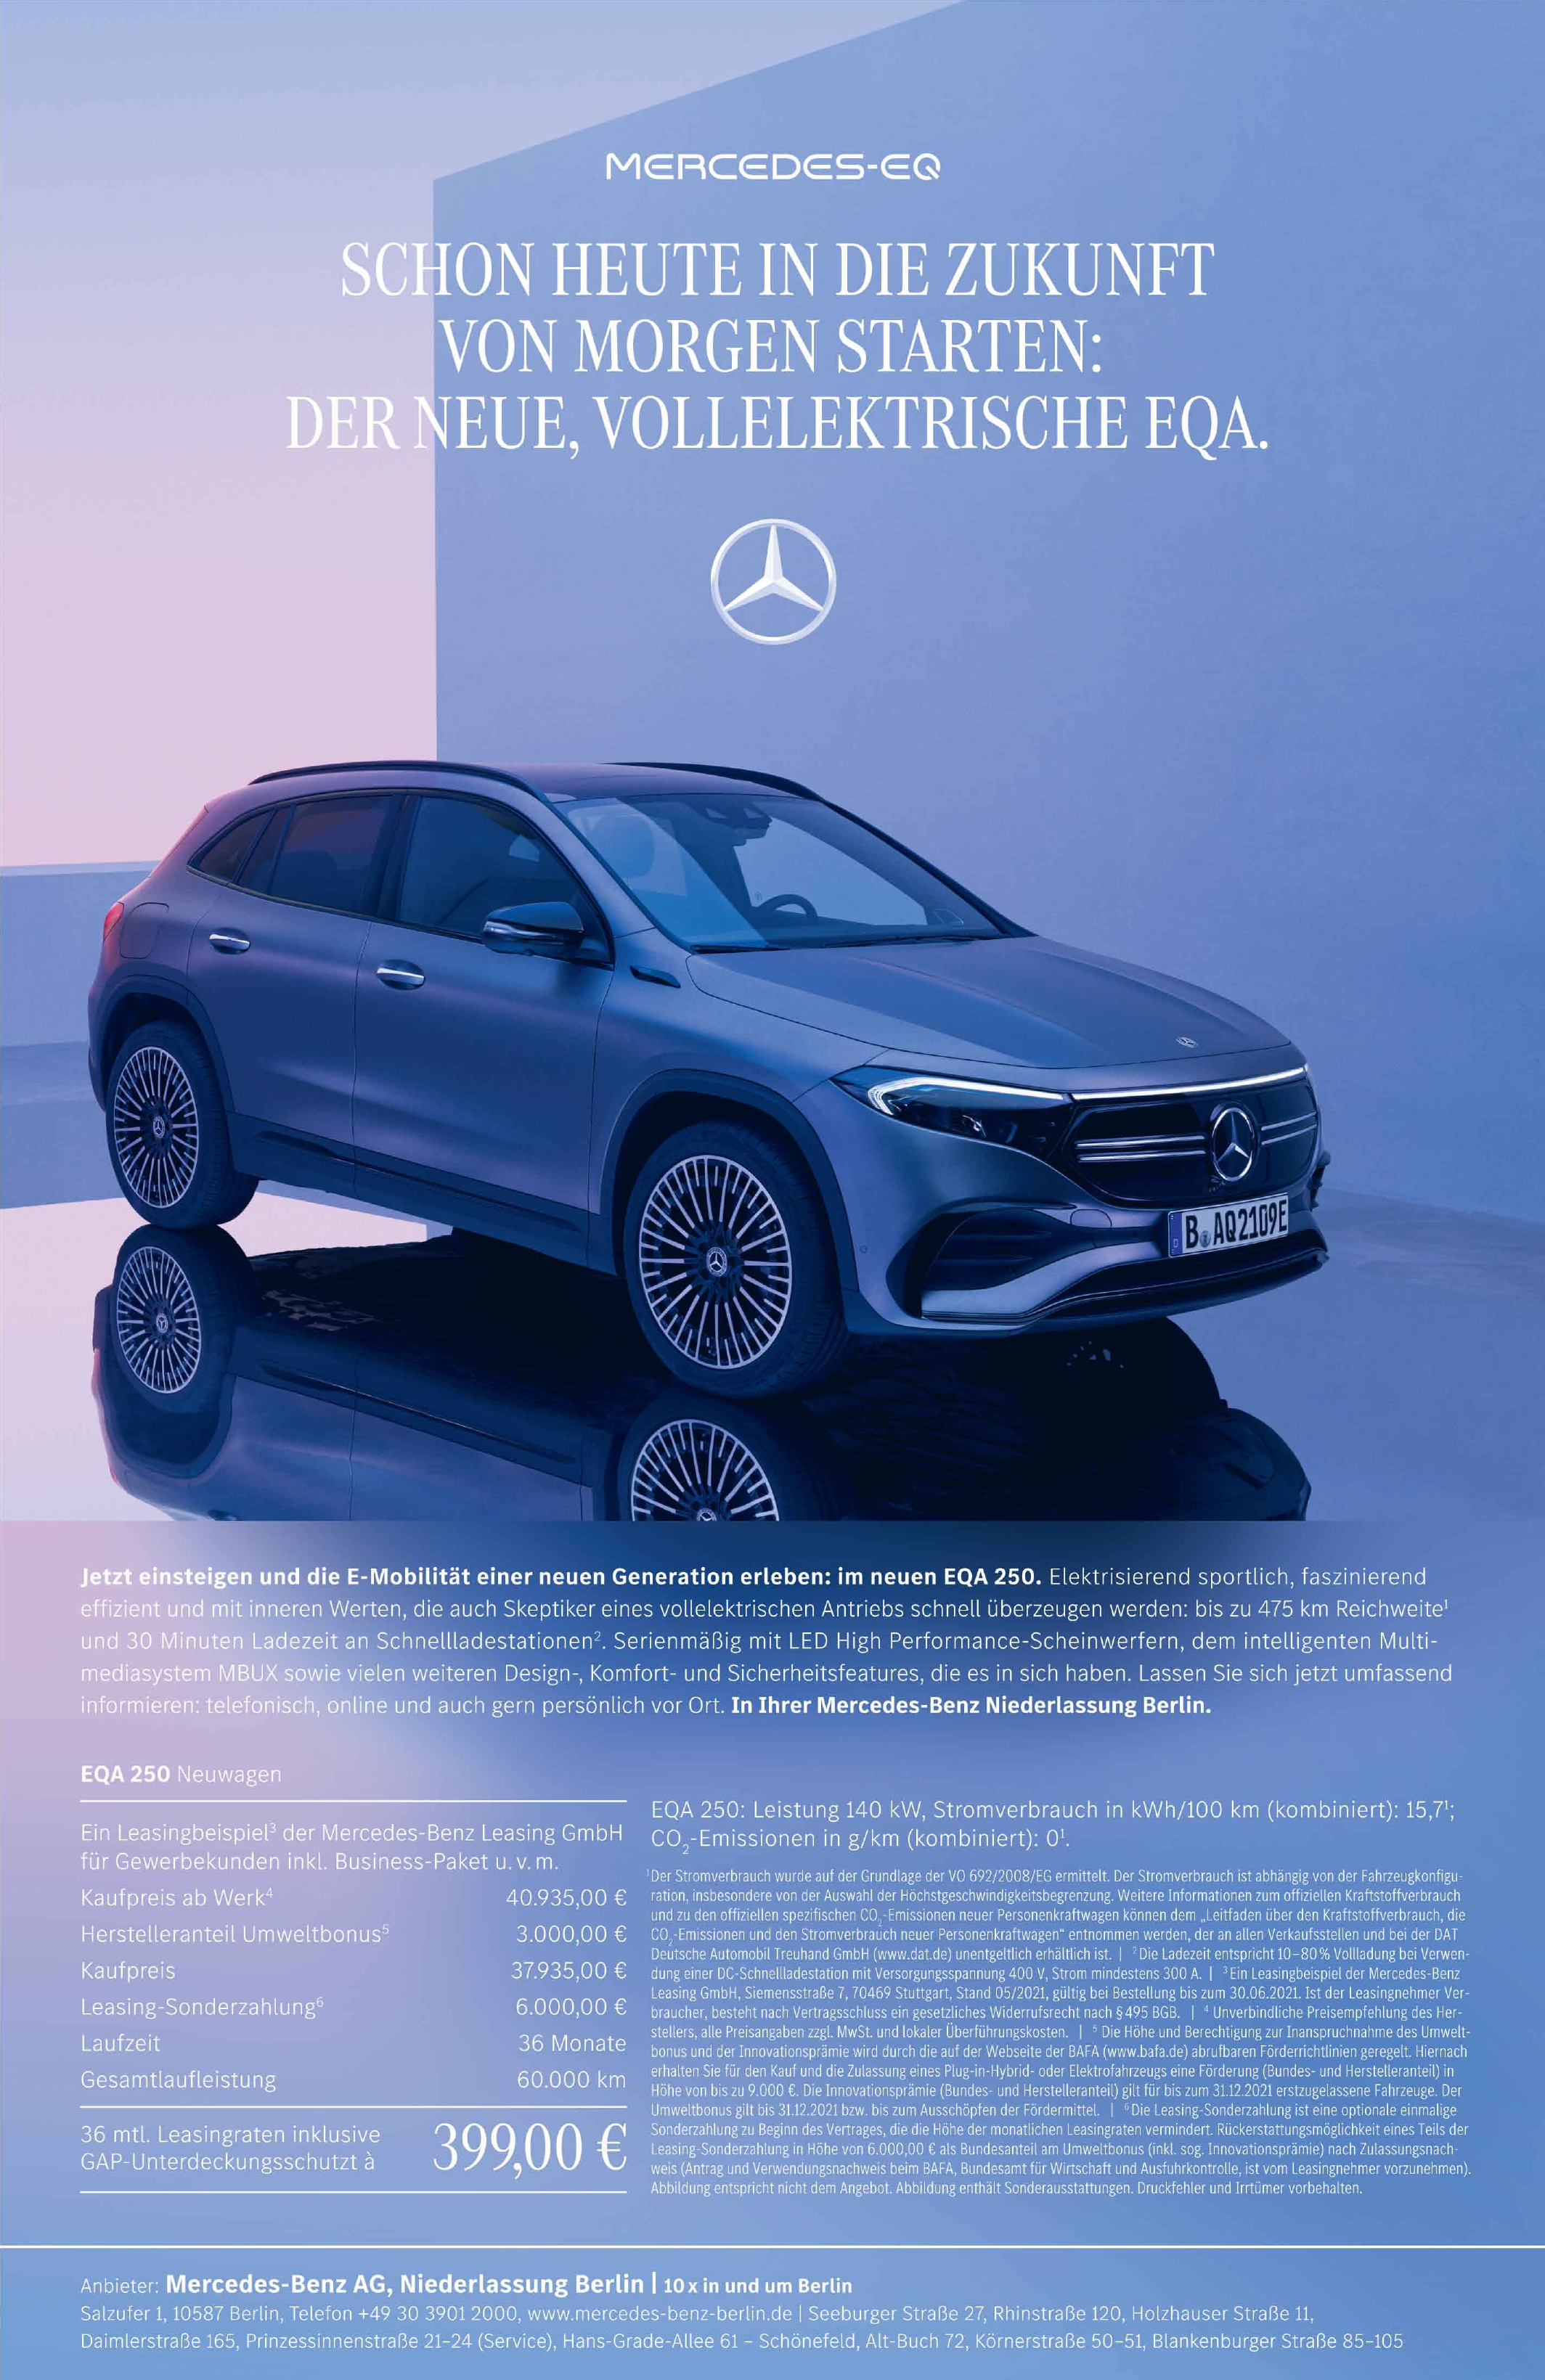 Mercedes-Benz AG, Niederlassung Berlin | 10 x in und um Berlin 